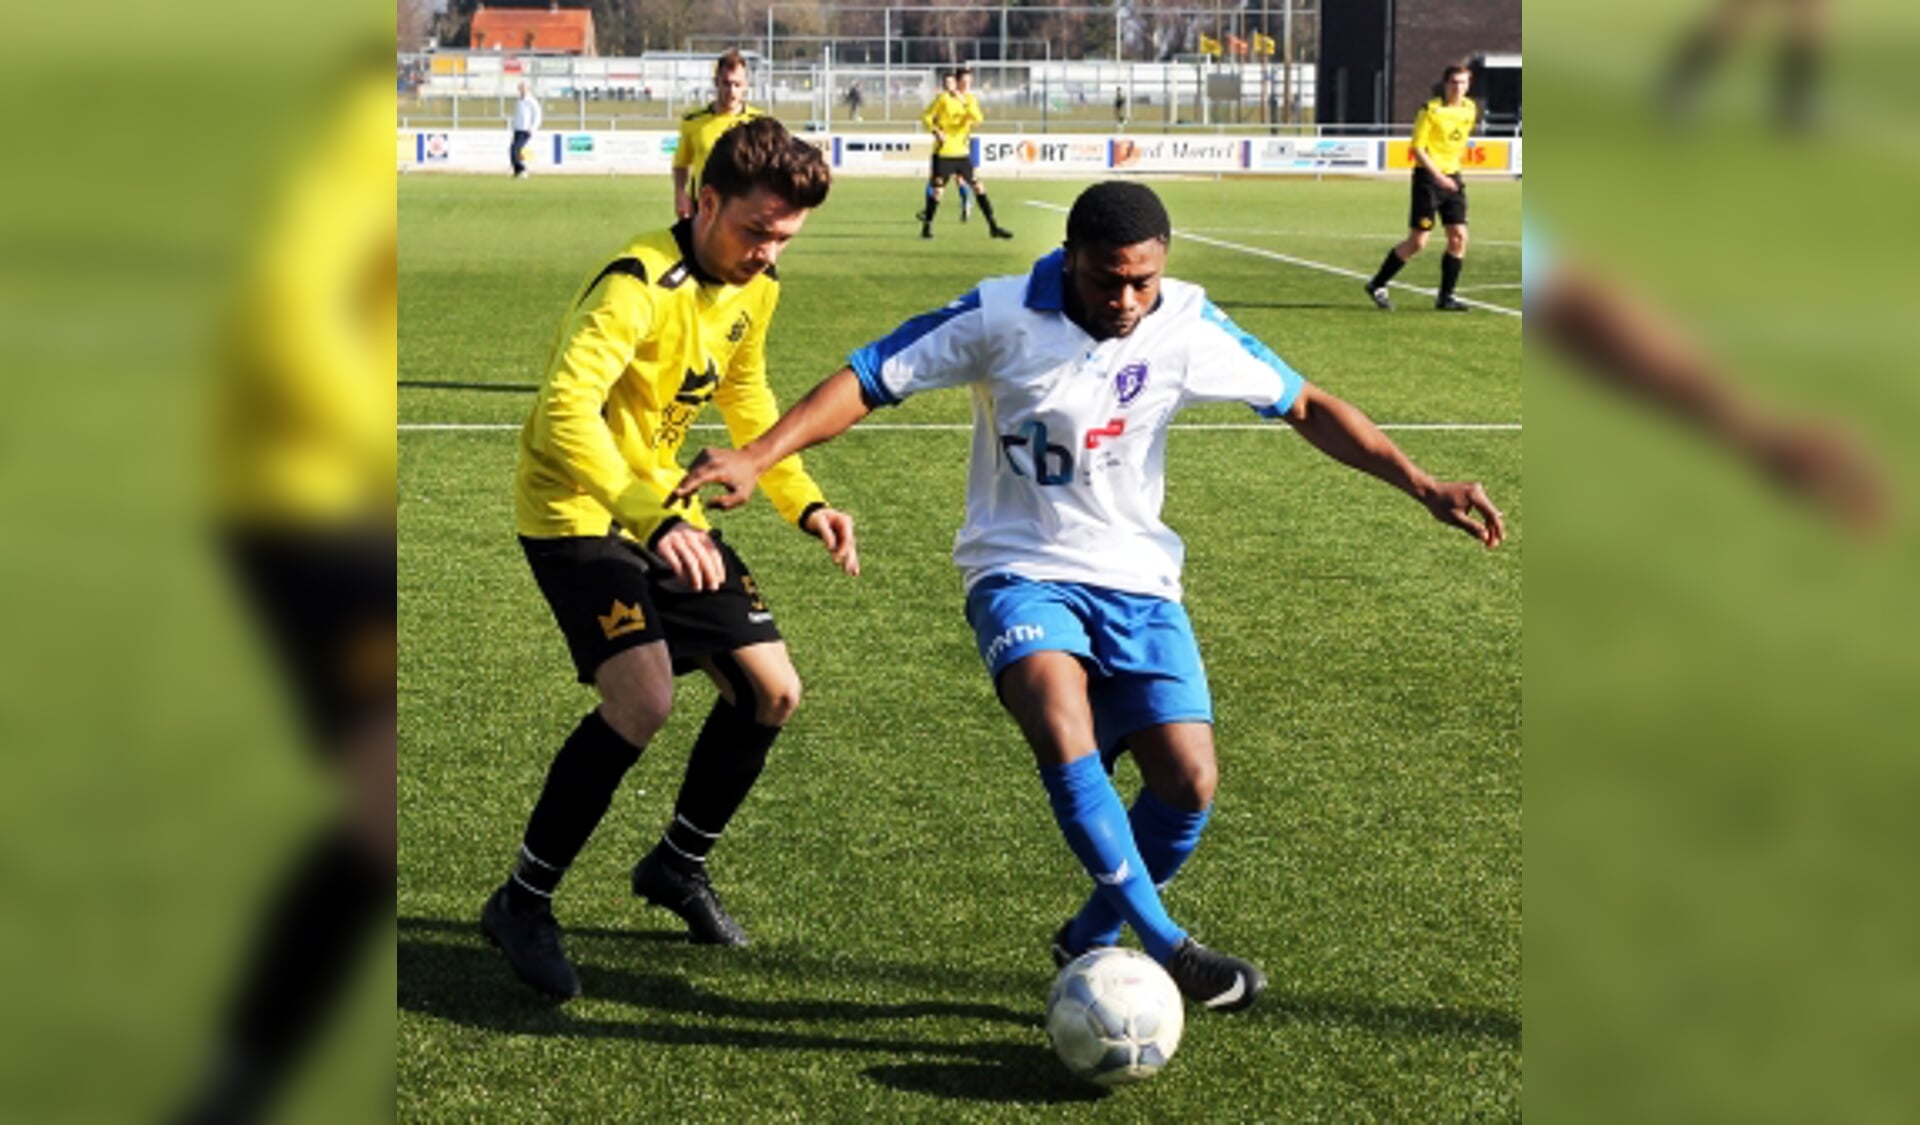 SSS'18 speelt zondag tegen buurman SV Venray. (foto: Henk Henckens)